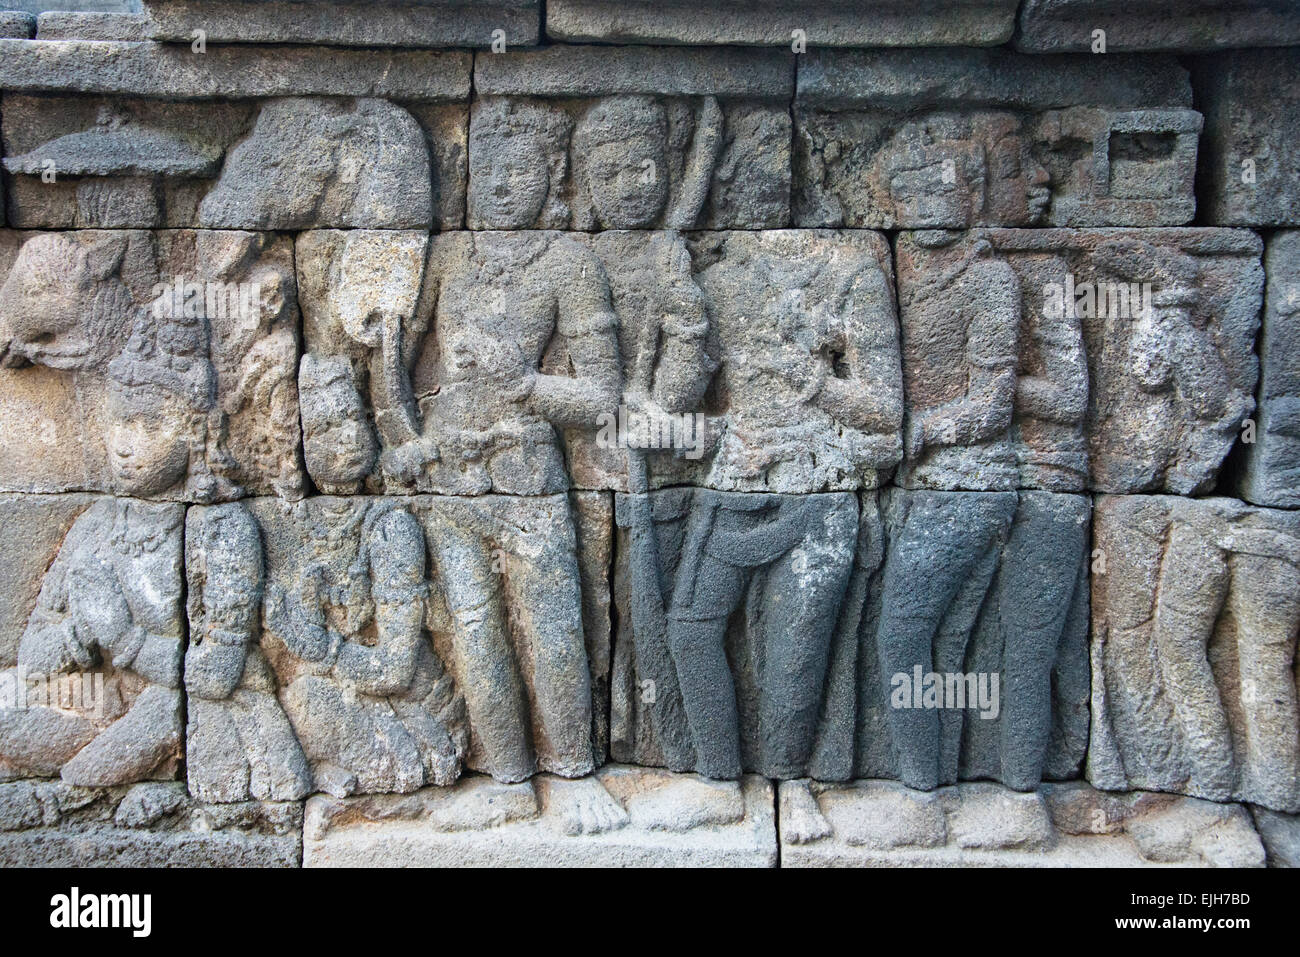 Libre de la sculpture sur pierre, Borobudur, UNESCO World Heritage site, Magelang,Central Java, Indonésie Banque D'Images